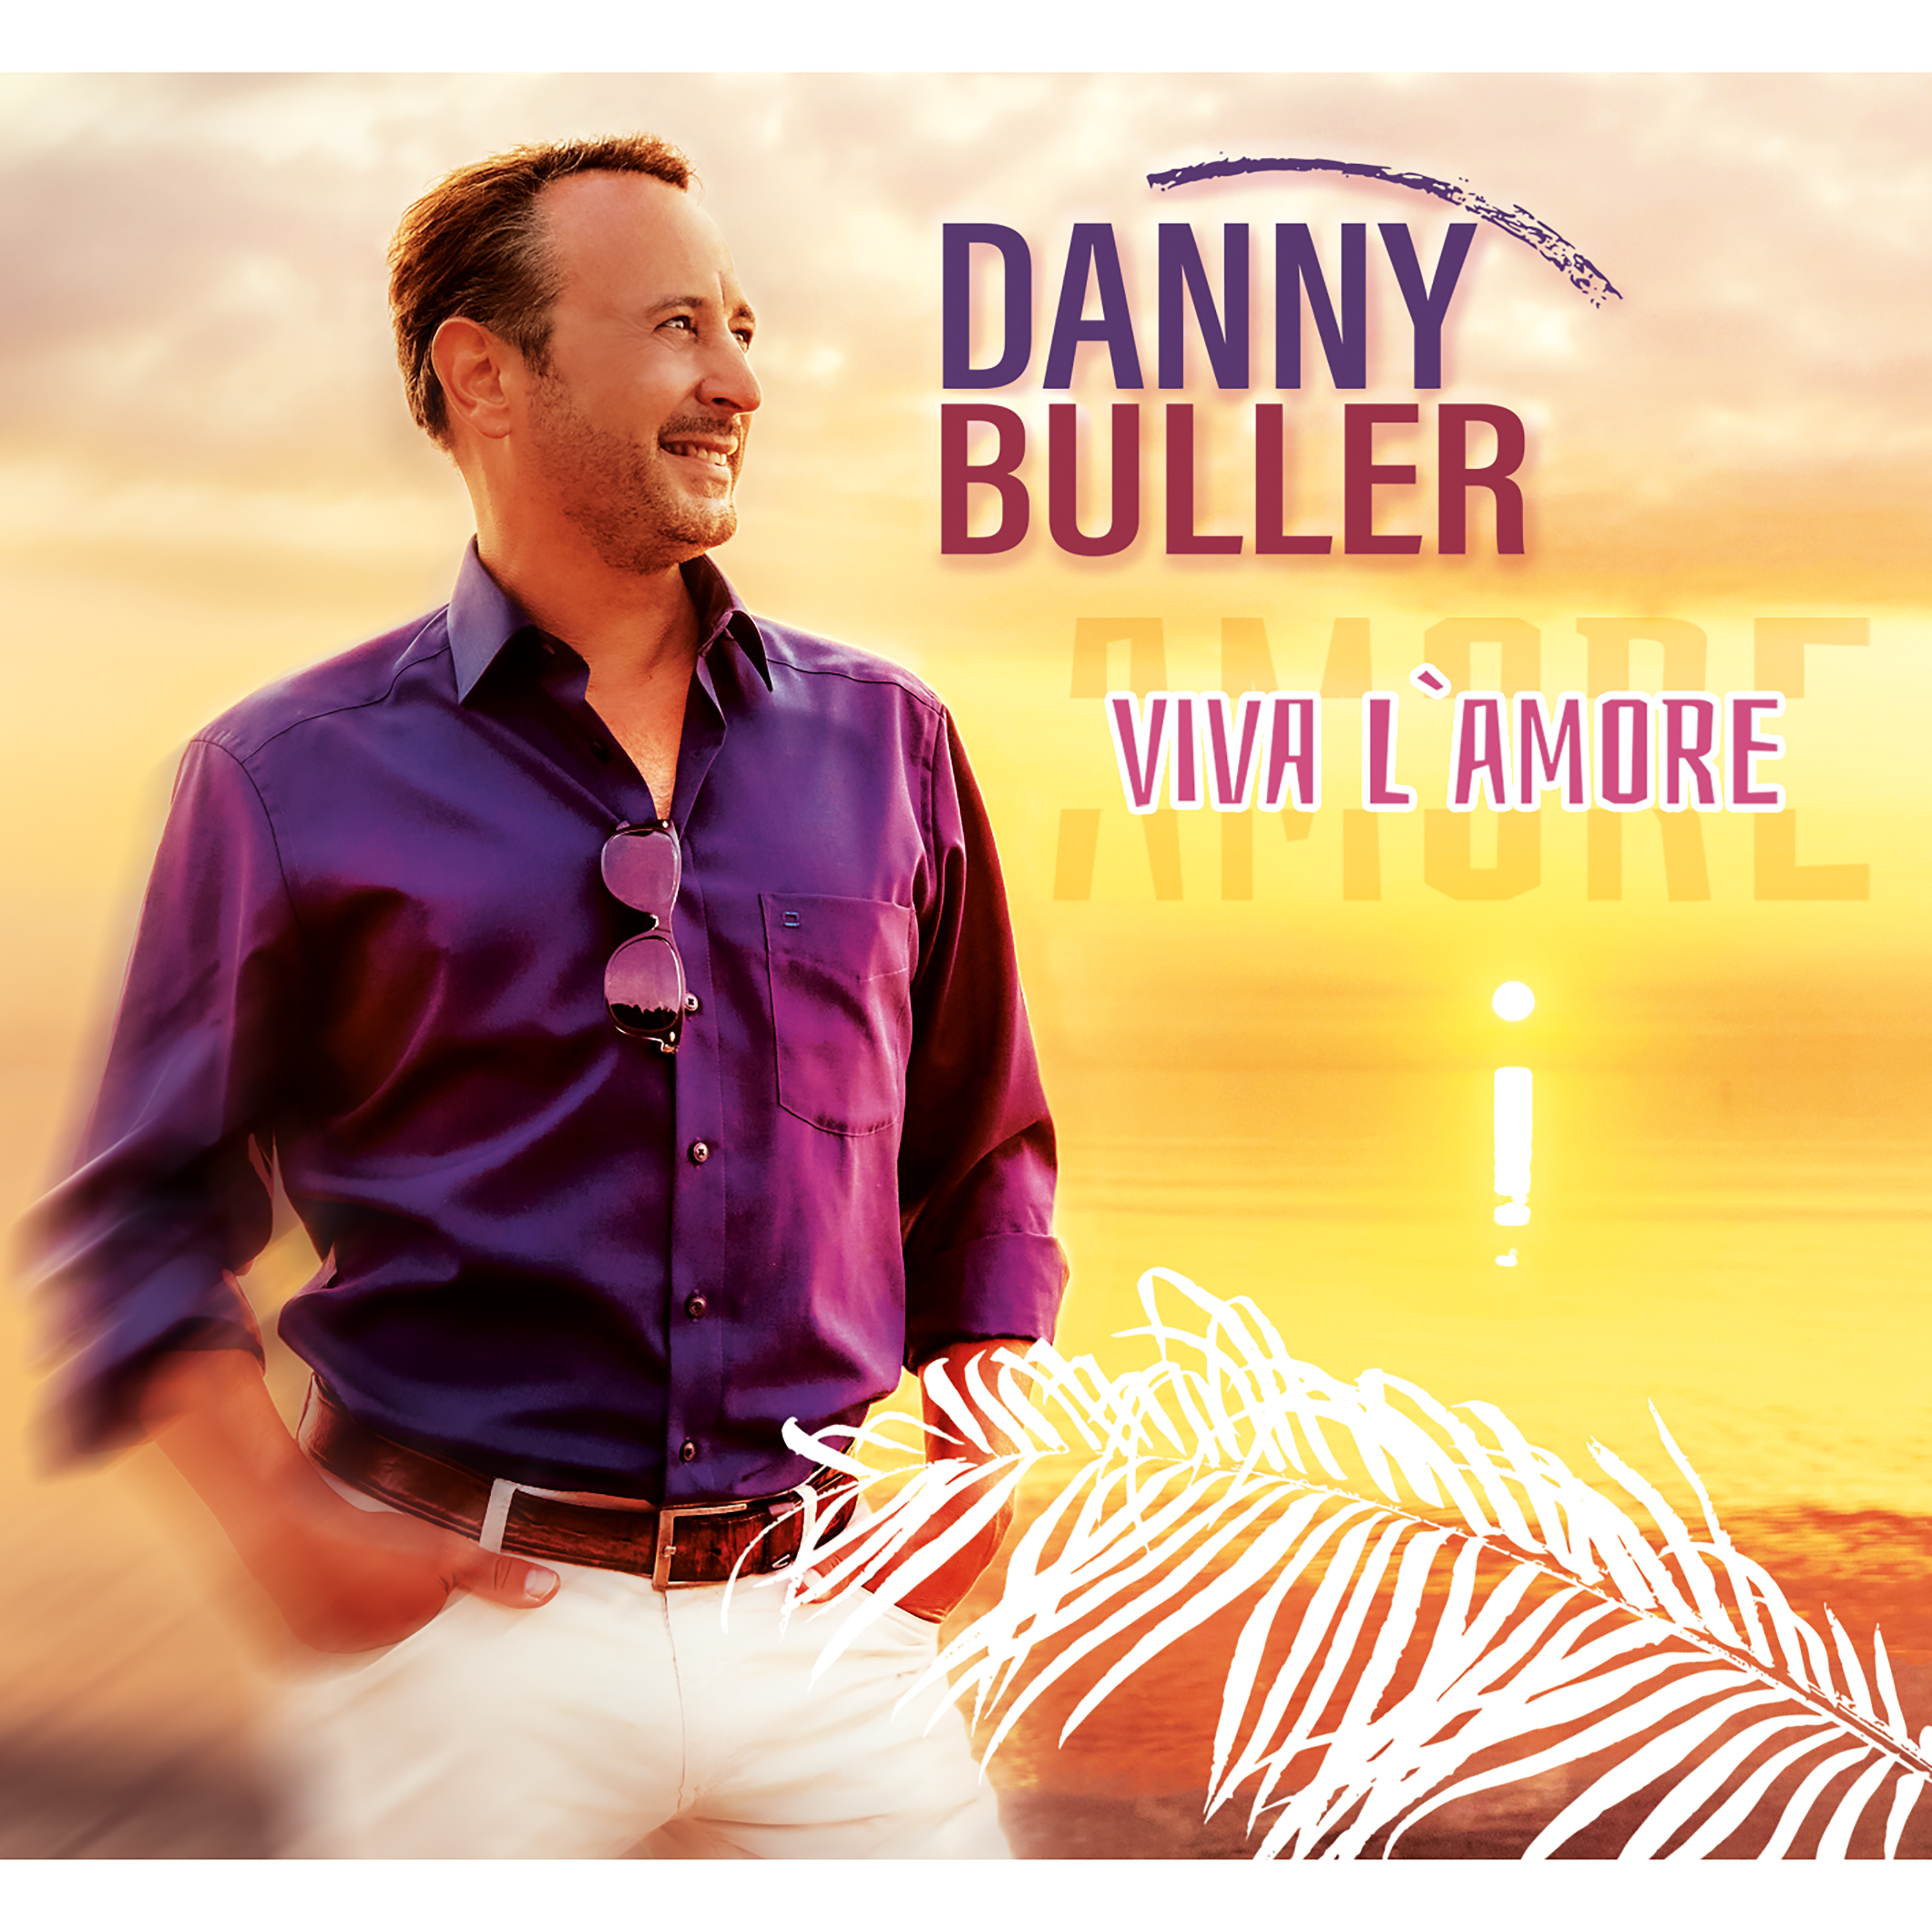 DANNY BULLER * Viva l'amore (Download-Track)